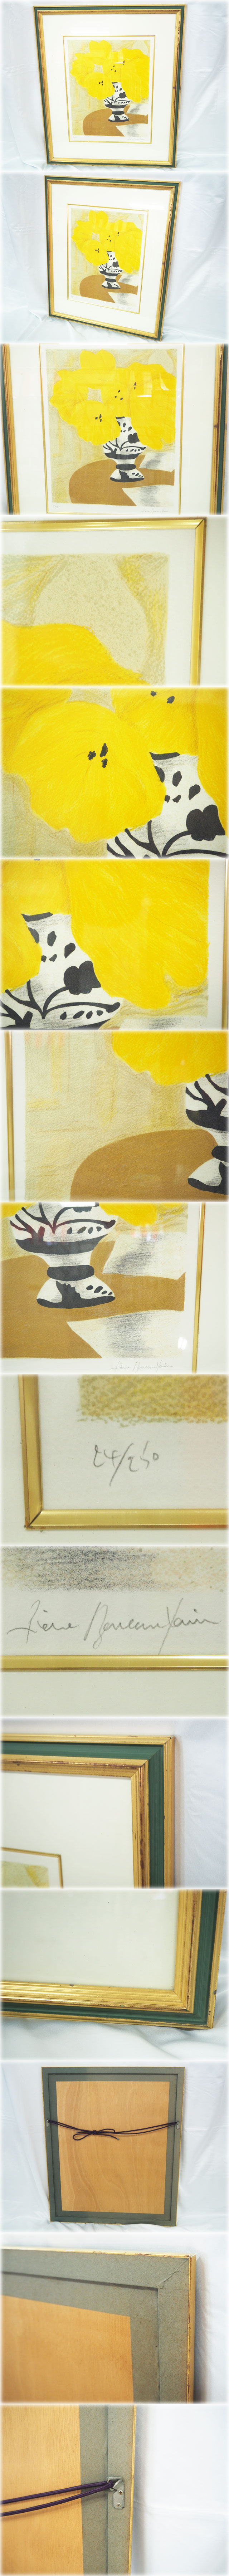 低価最安値ピエール・ボンコンパン リトグラフ 「テーブルの上の黄色いブーケ」 額付 鉛筆サインNo.24/250 Pierre Boncompain 石版画、リトグラフ